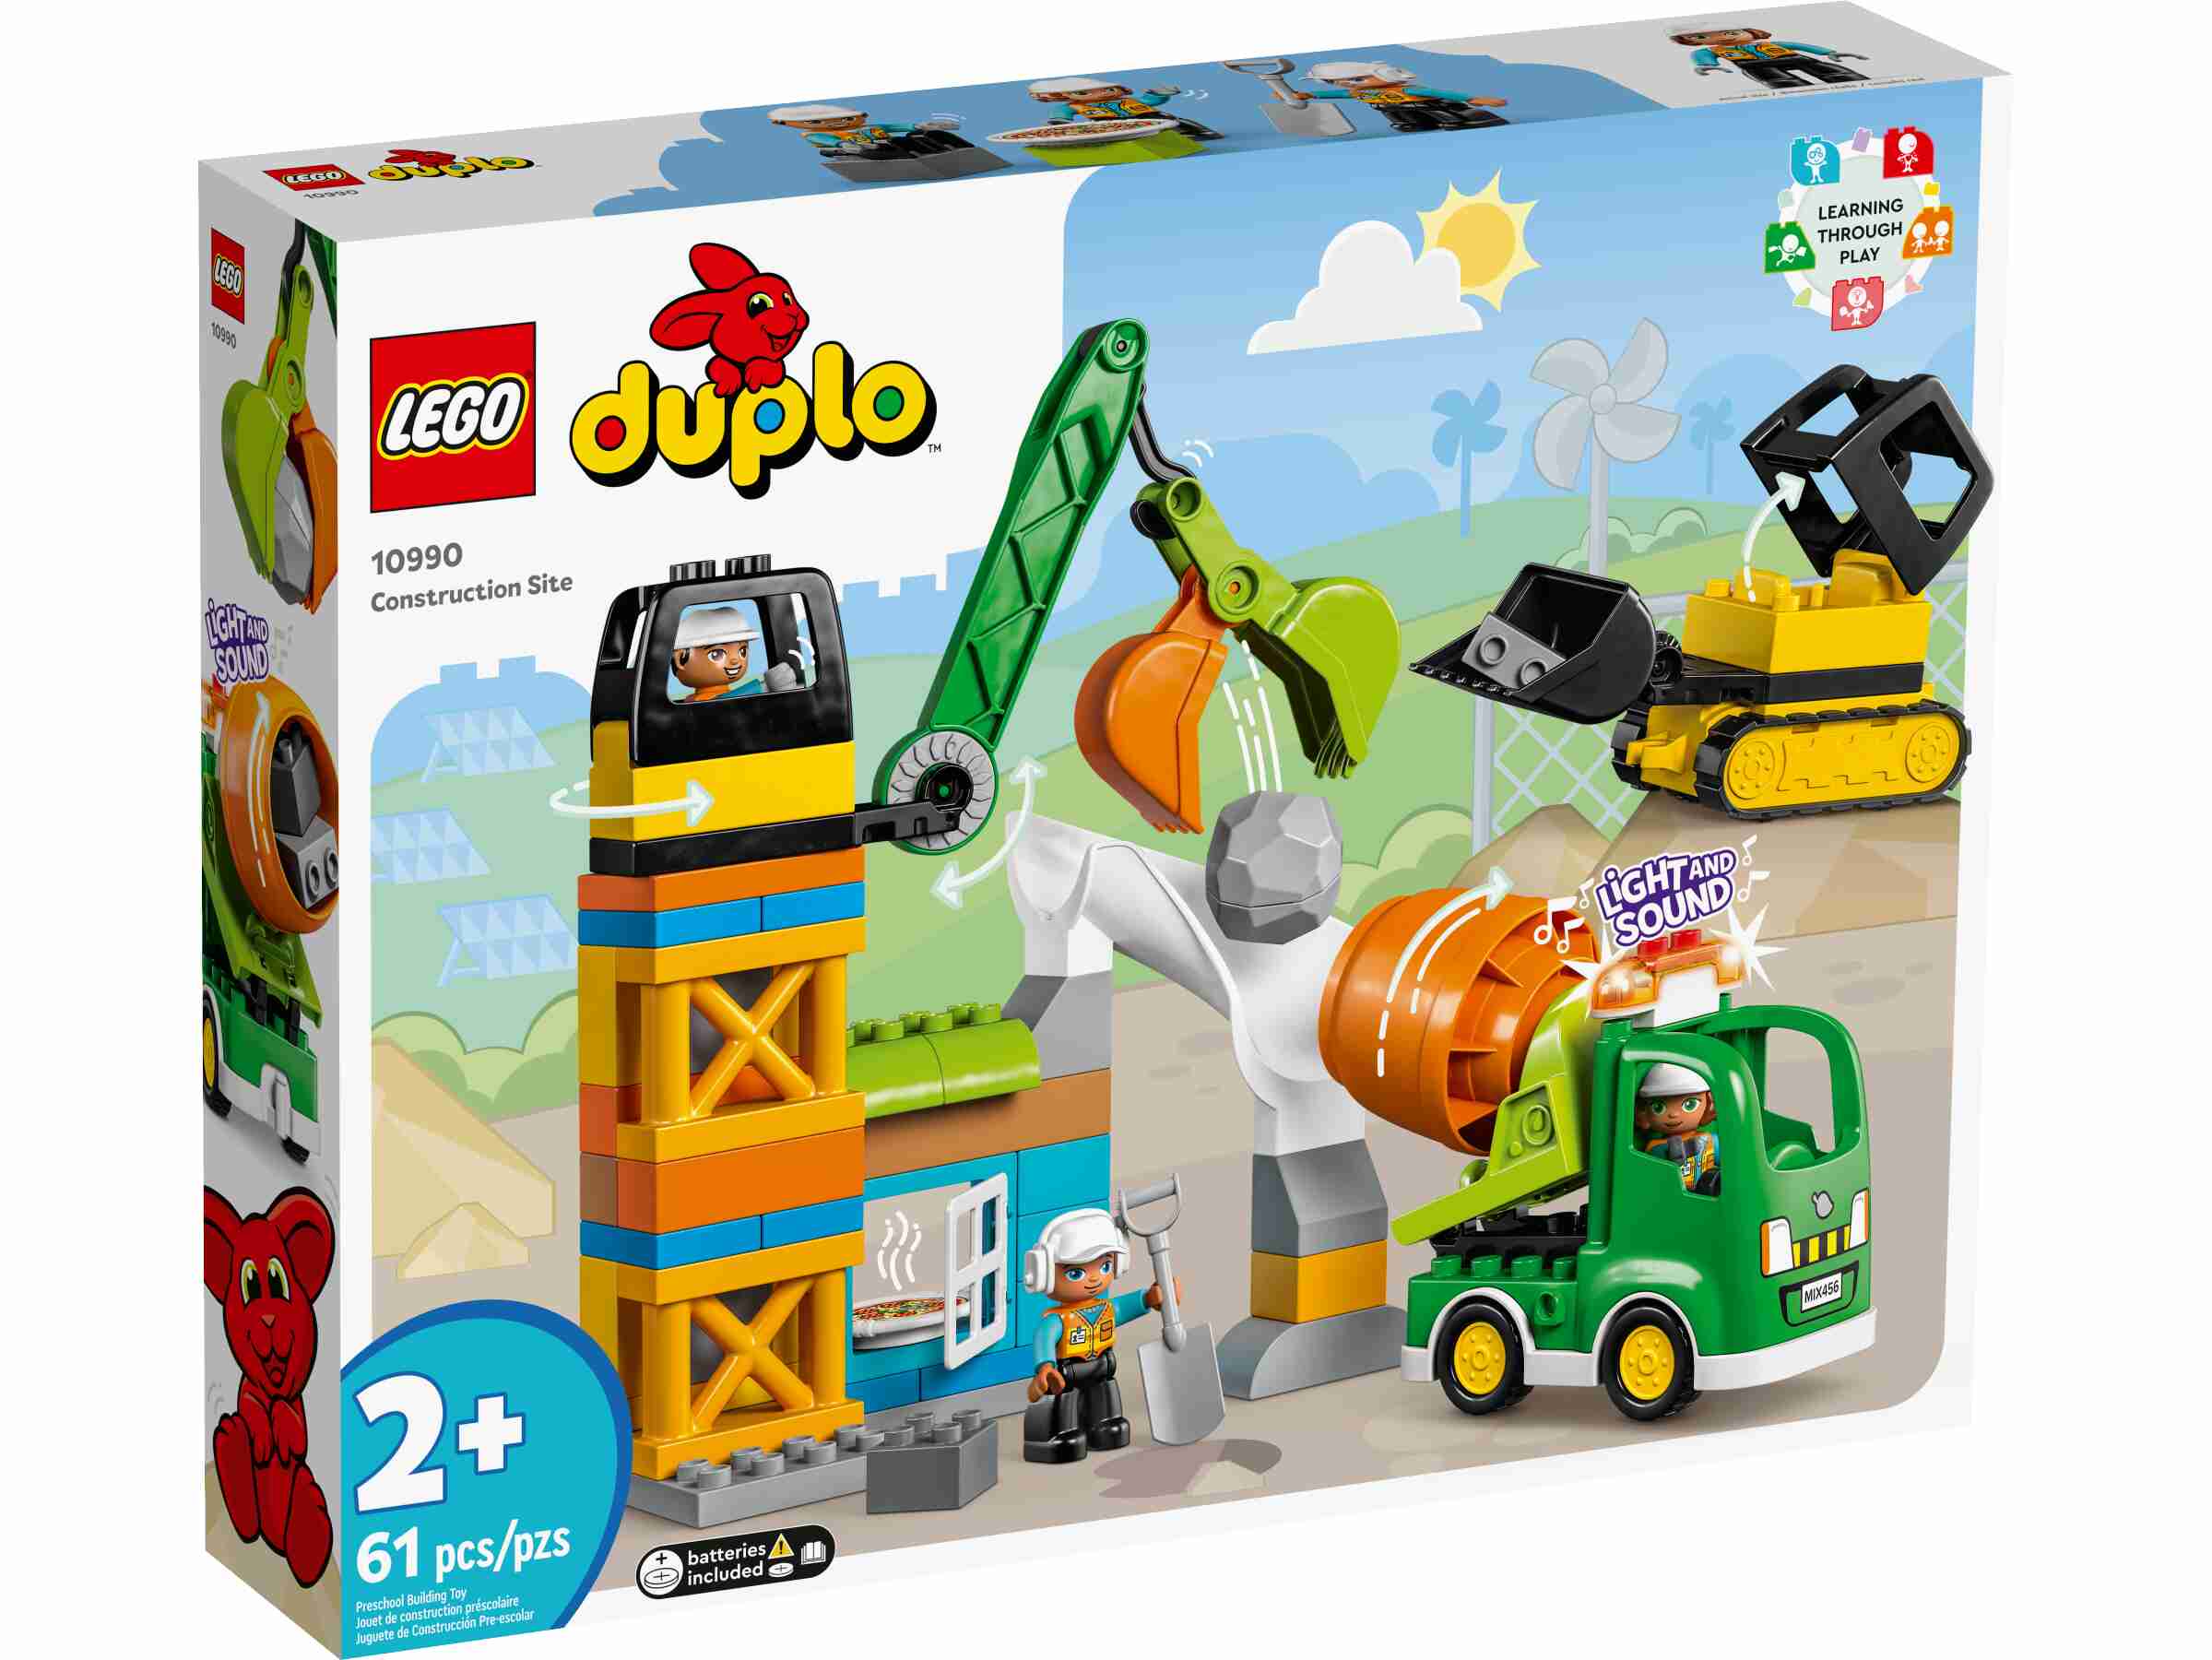 LEGO 10990 DUPLO Baustelle mit Baufahrzeugen, 3 Baufahrzeuge, 3 Bauarbeiter